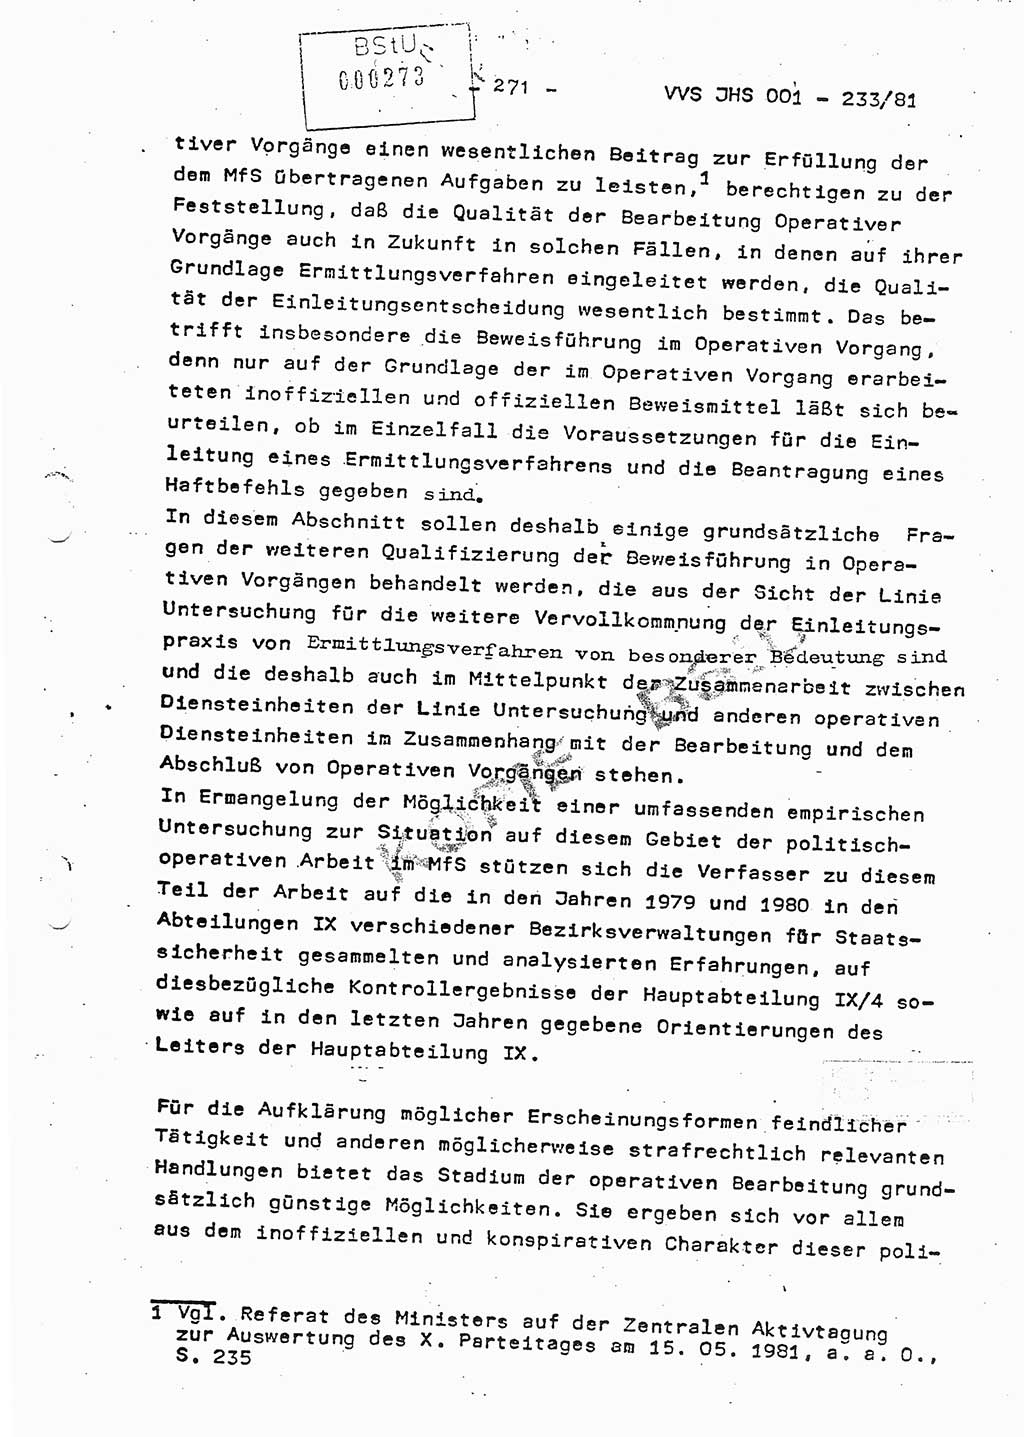 Dissertation Oberstleutnant Horst Zank (JHS), Oberstleutnant Dr. Karl-Heinz Knoblauch (JHS), Oberstleutnant Gustav-Adolf Kowalewski (HA Ⅸ), Oberstleutnant Wolfgang Plötner (HA Ⅸ), Ministerium für Staatssicherheit (MfS) [Deutsche Demokratische Republik (DDR)], Juristische Hochschule (JHS), Vertrauliche Verschlußsache (VVS) o001-233/81, Potsdam 1981, Blatt 271 (Diss. MfS DDR JHS VVS o001-233/81 1981, Bl. 271)